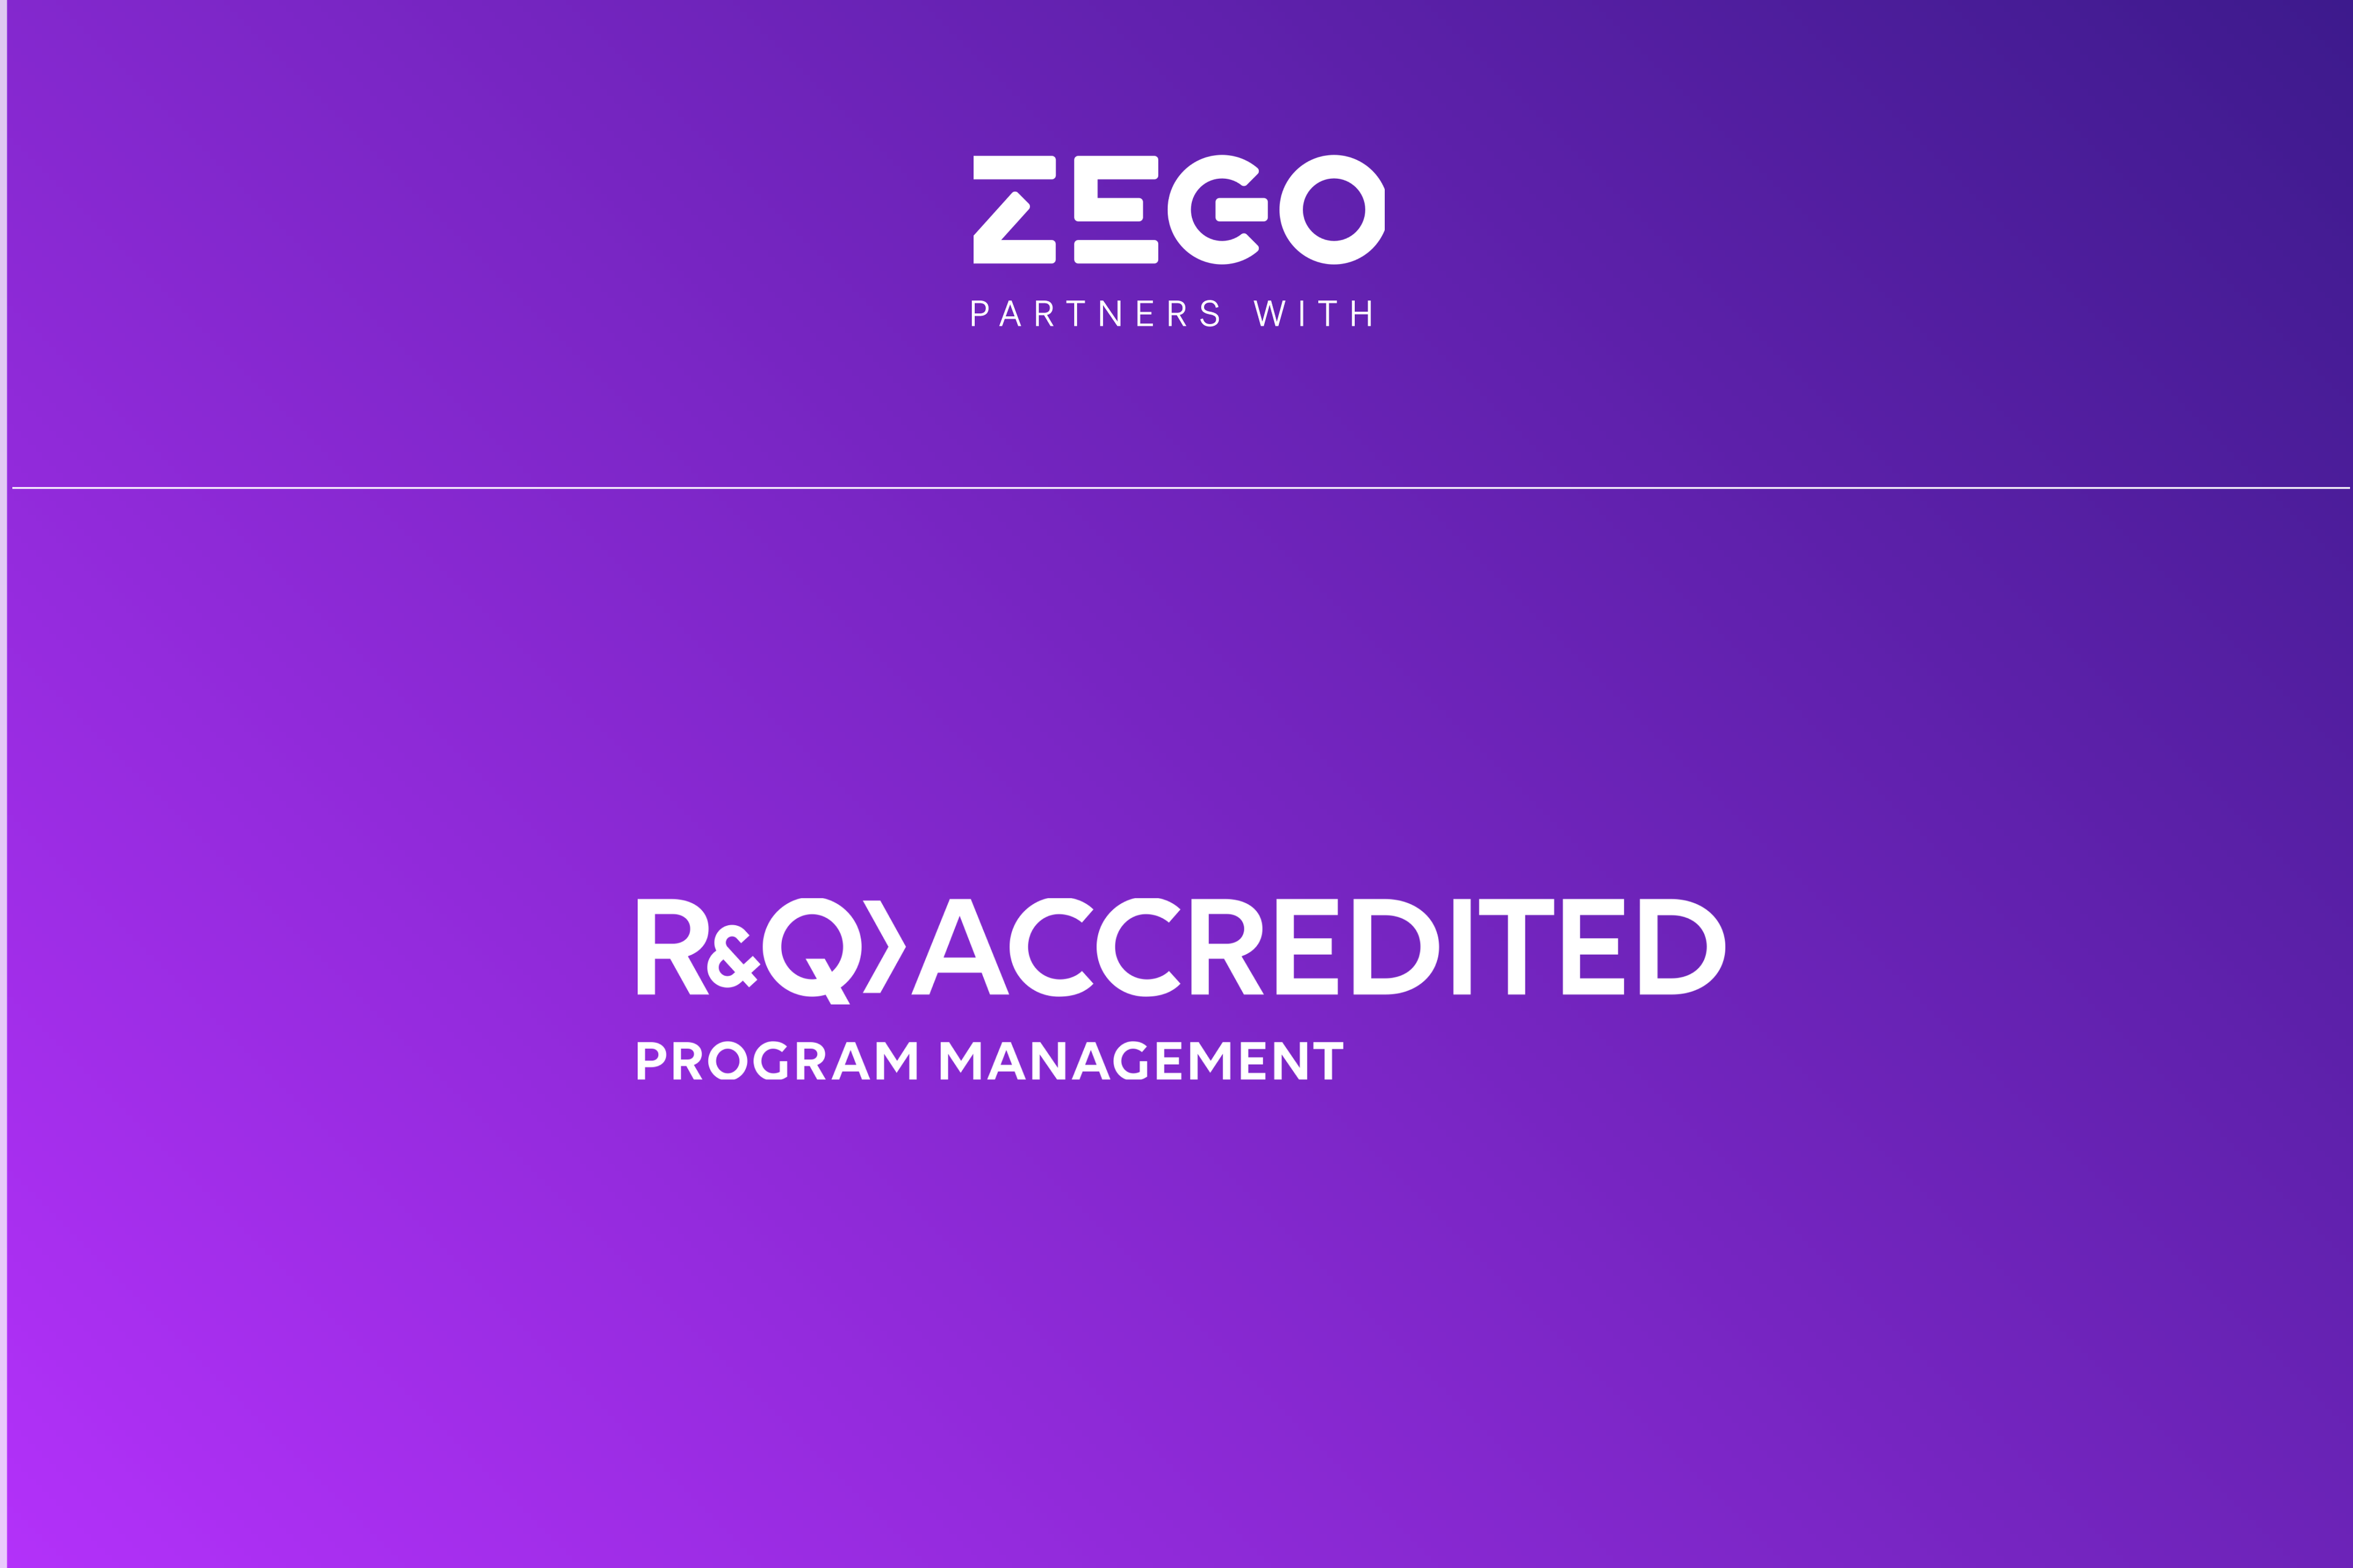 Zego gaat partnerschap aan met Accredited Insurance Europe Limited om het aanbod van wagenparkverzekeringen uit te breiden